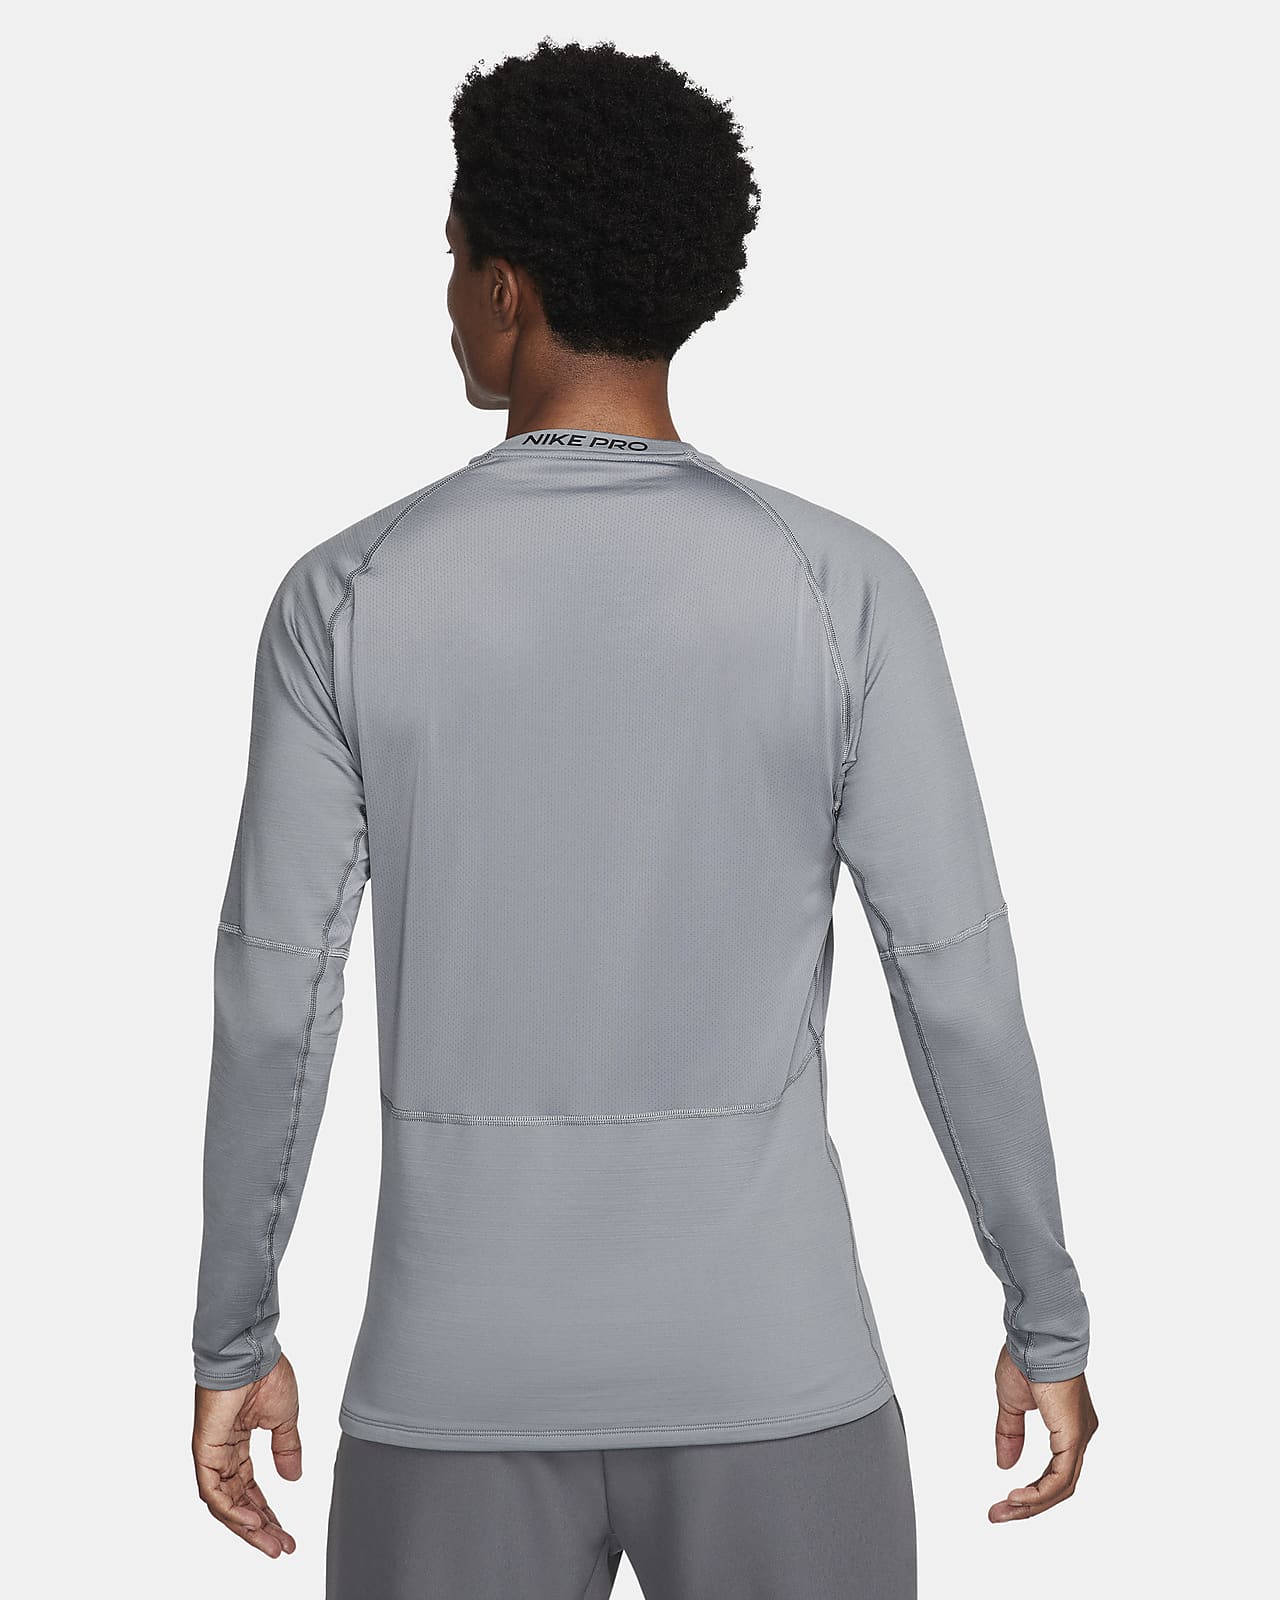 Nike Sportswear Men's Long-Sleeve T-Shirt.